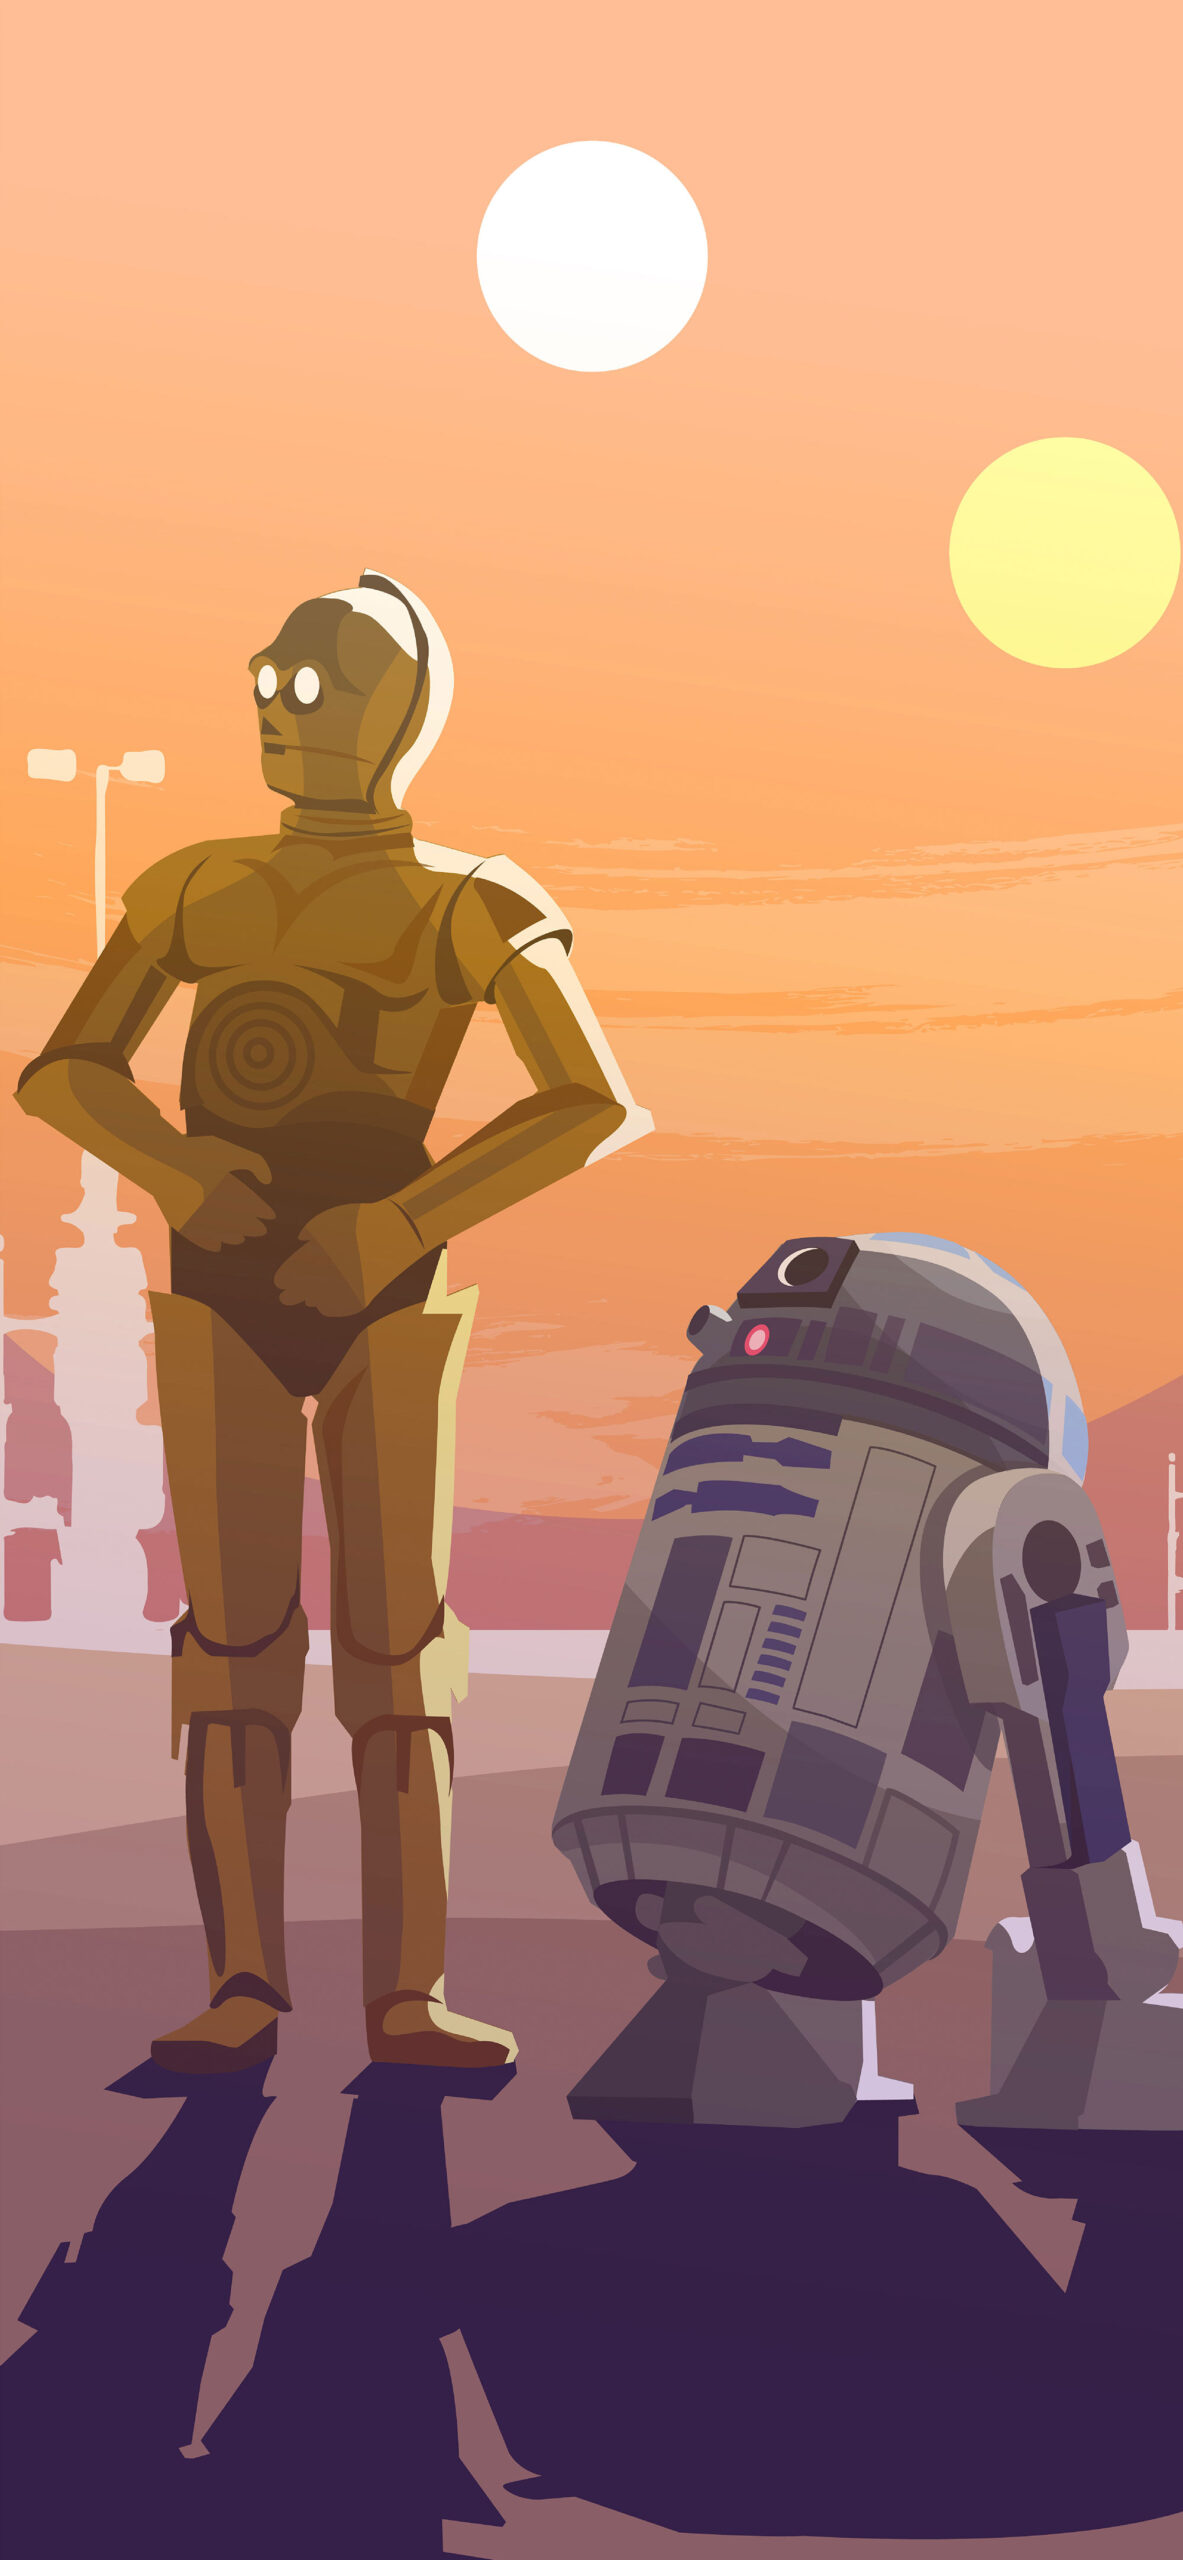 R2 D2 Star Wars Minimalist Wallpapers